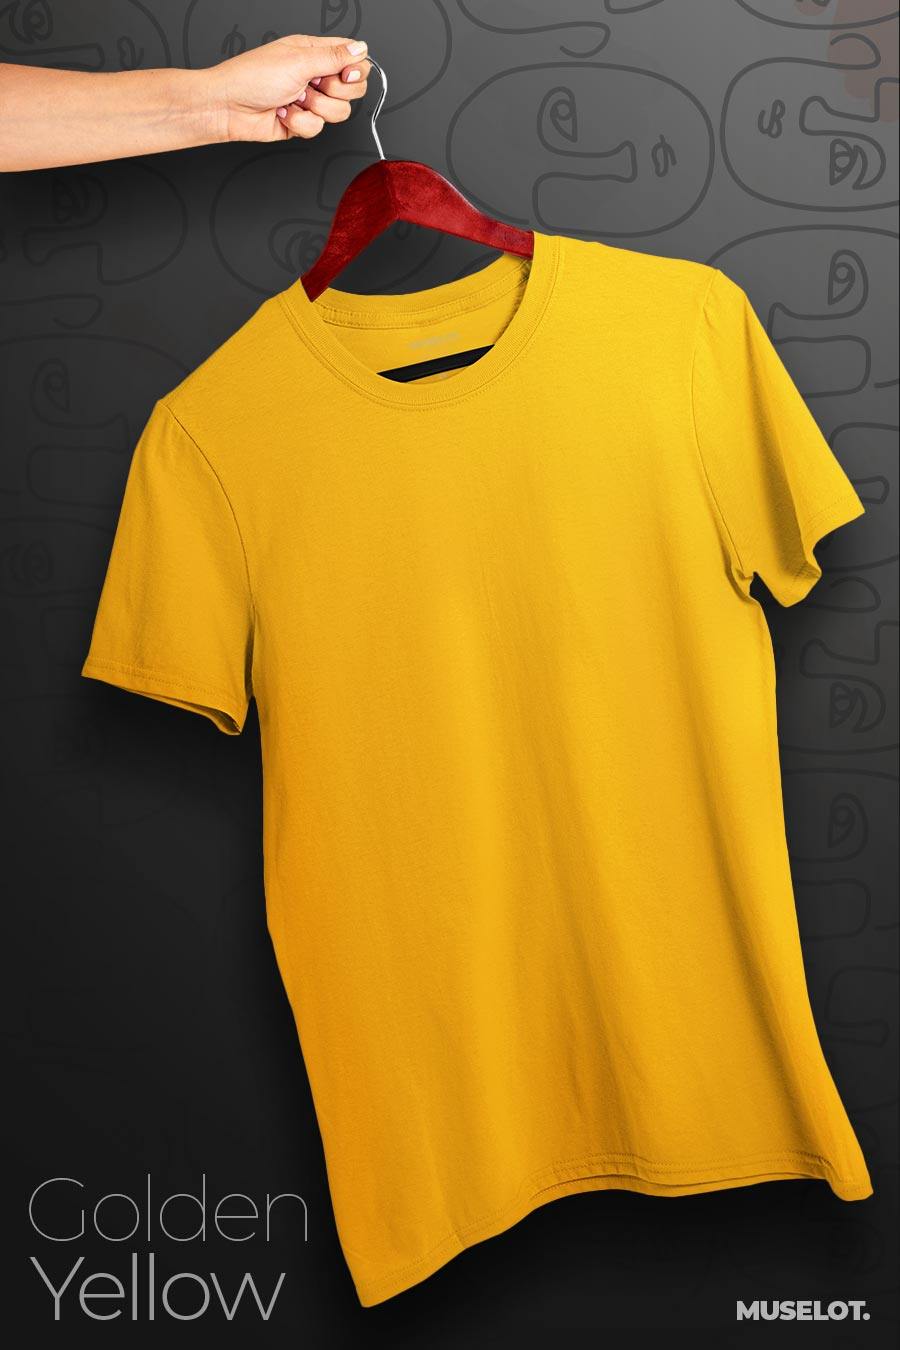 plain t shirts - Plus size t shirts (light solid colors)  - MUSELOT